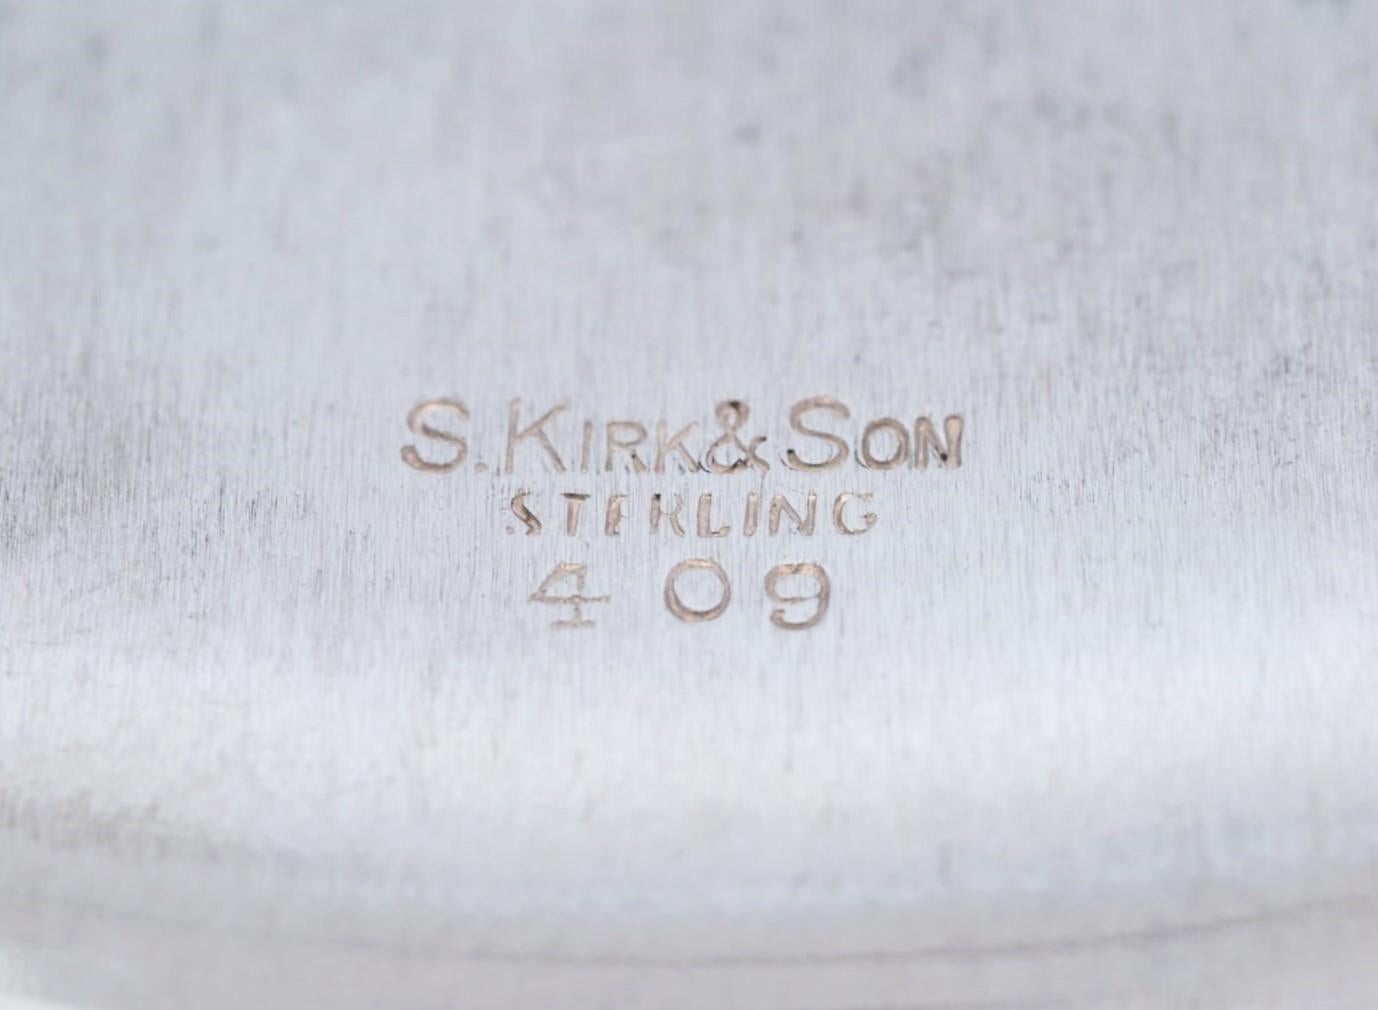 Women's or Men's S. Kirk & Son Repousse Sterling Bon Bon Bowl 409 No mono  For Sale